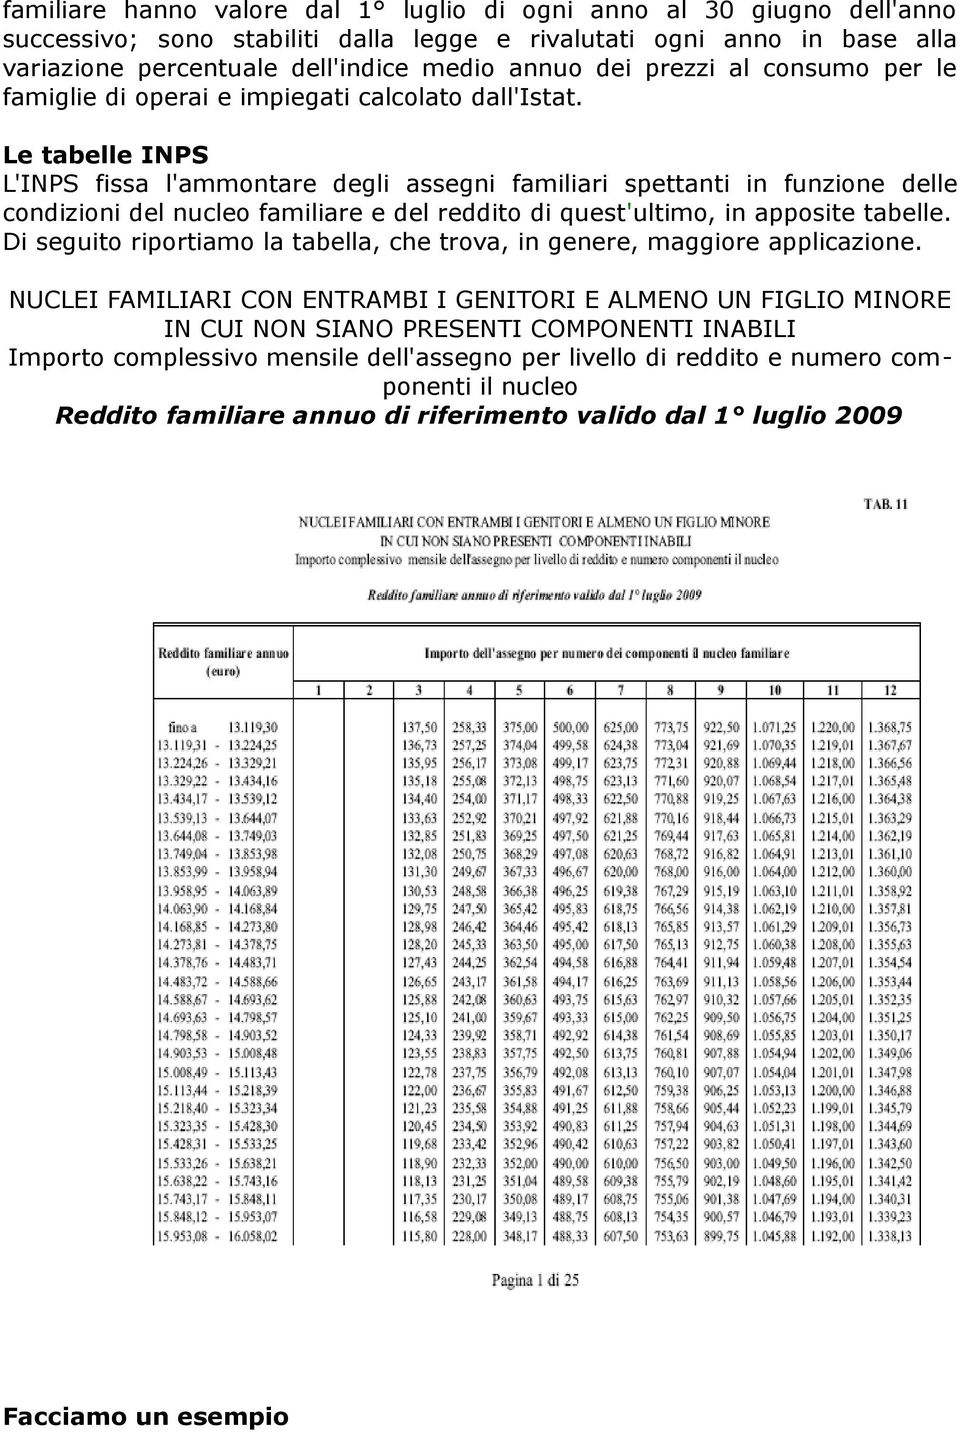 Le tabelle INPS L'INPS fissa l'ammontare degli assegni familiari spettanti in funzione delle condizioni del nucleo familiare e del reddito di quest'ultimo, in apposite tabelle.